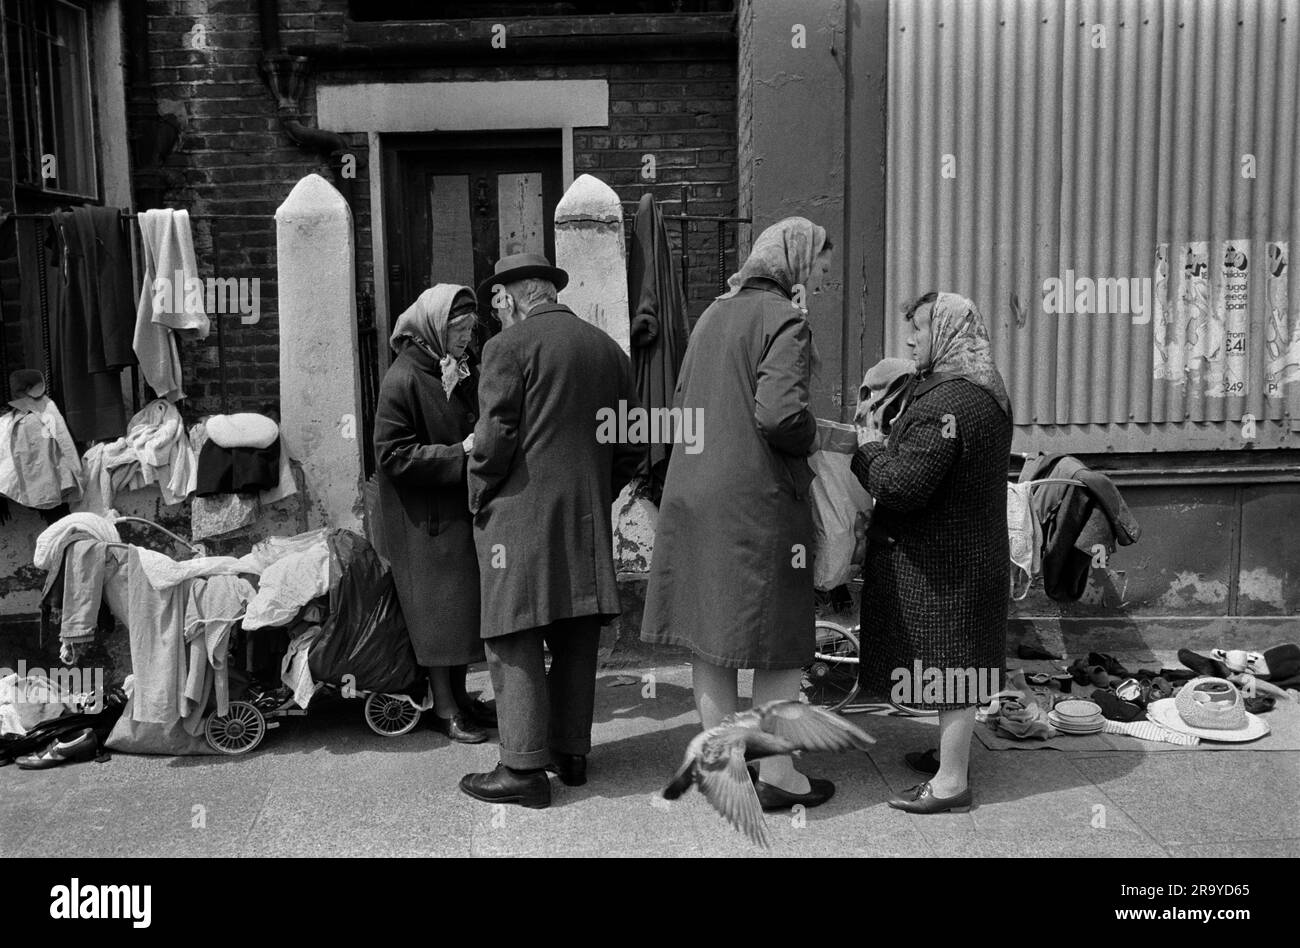 Armut East London 1970s UK. Arbeitslose Frauen verkaufen alte Kleidung und Bric-a-brac von Kinderwagen, um ihr dürftiges Leben zu ergänzen. Eine trägt ihr Kopftuch über ihrem Hut, um die Kälte fernzuhalten. Whitechapel, London, England 1972 70er Jahre HOMER SYKES. Stockfoto